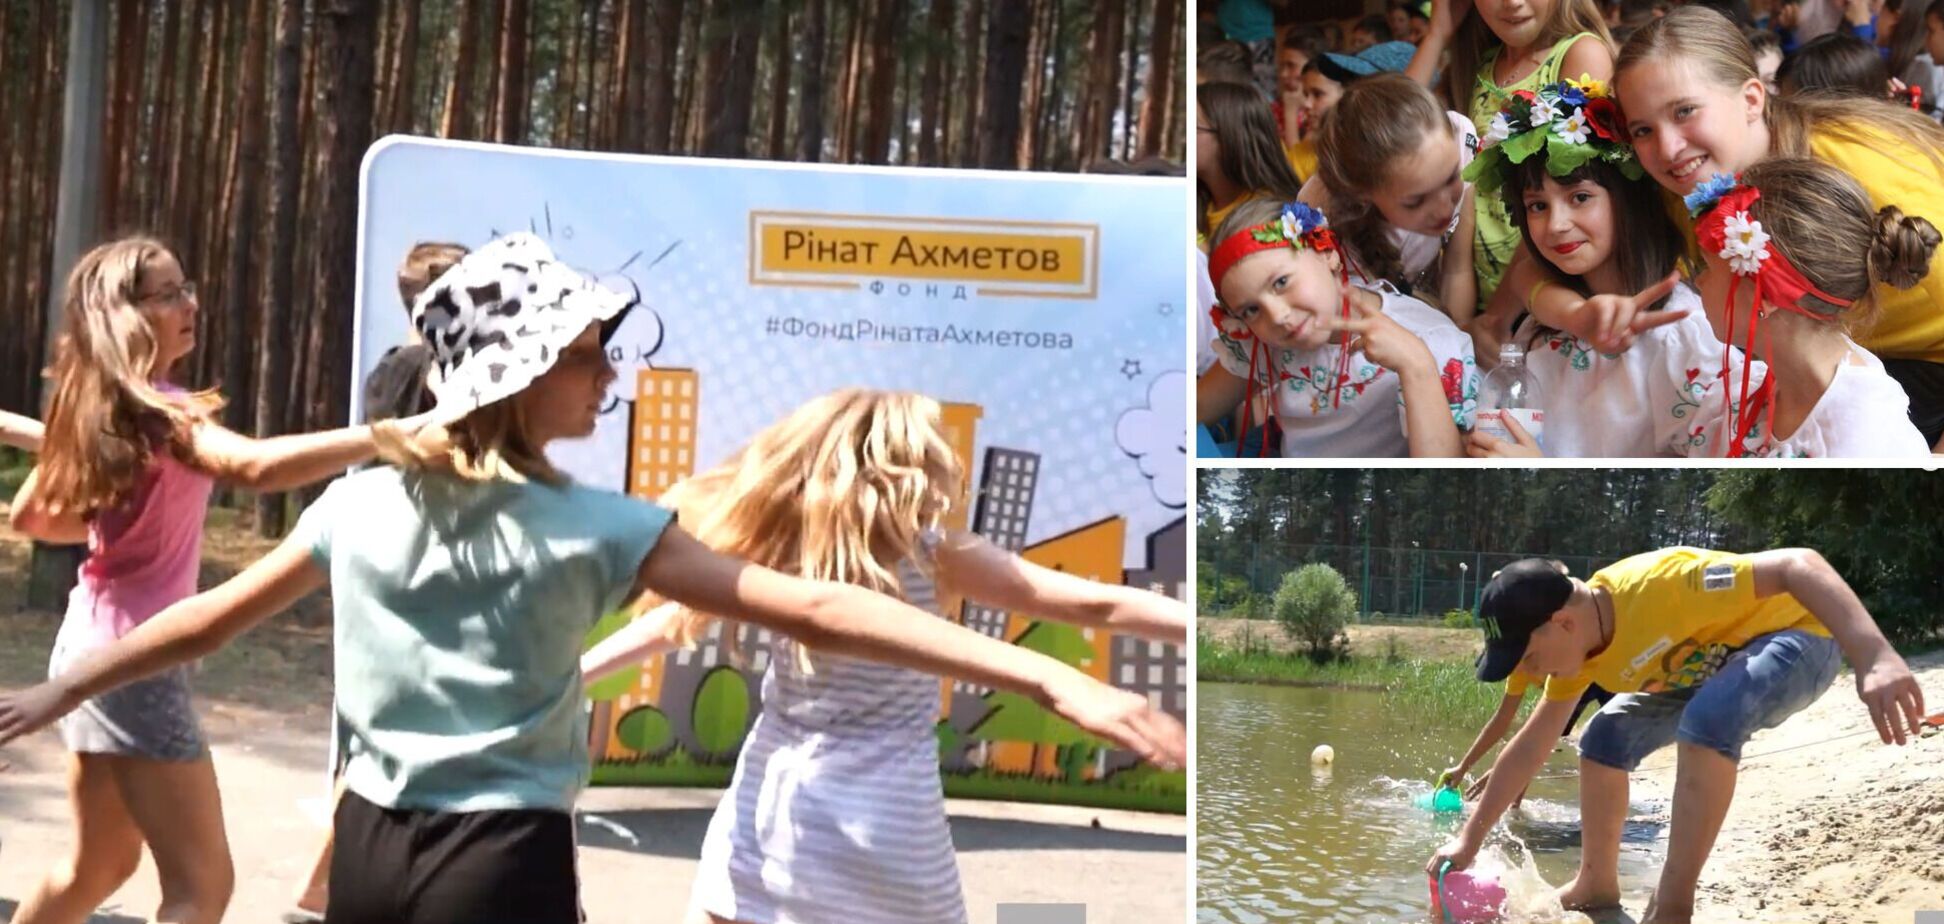 Діти мають бути щасливими: як Фонд Ріната Ахметова допомагає юним українцям